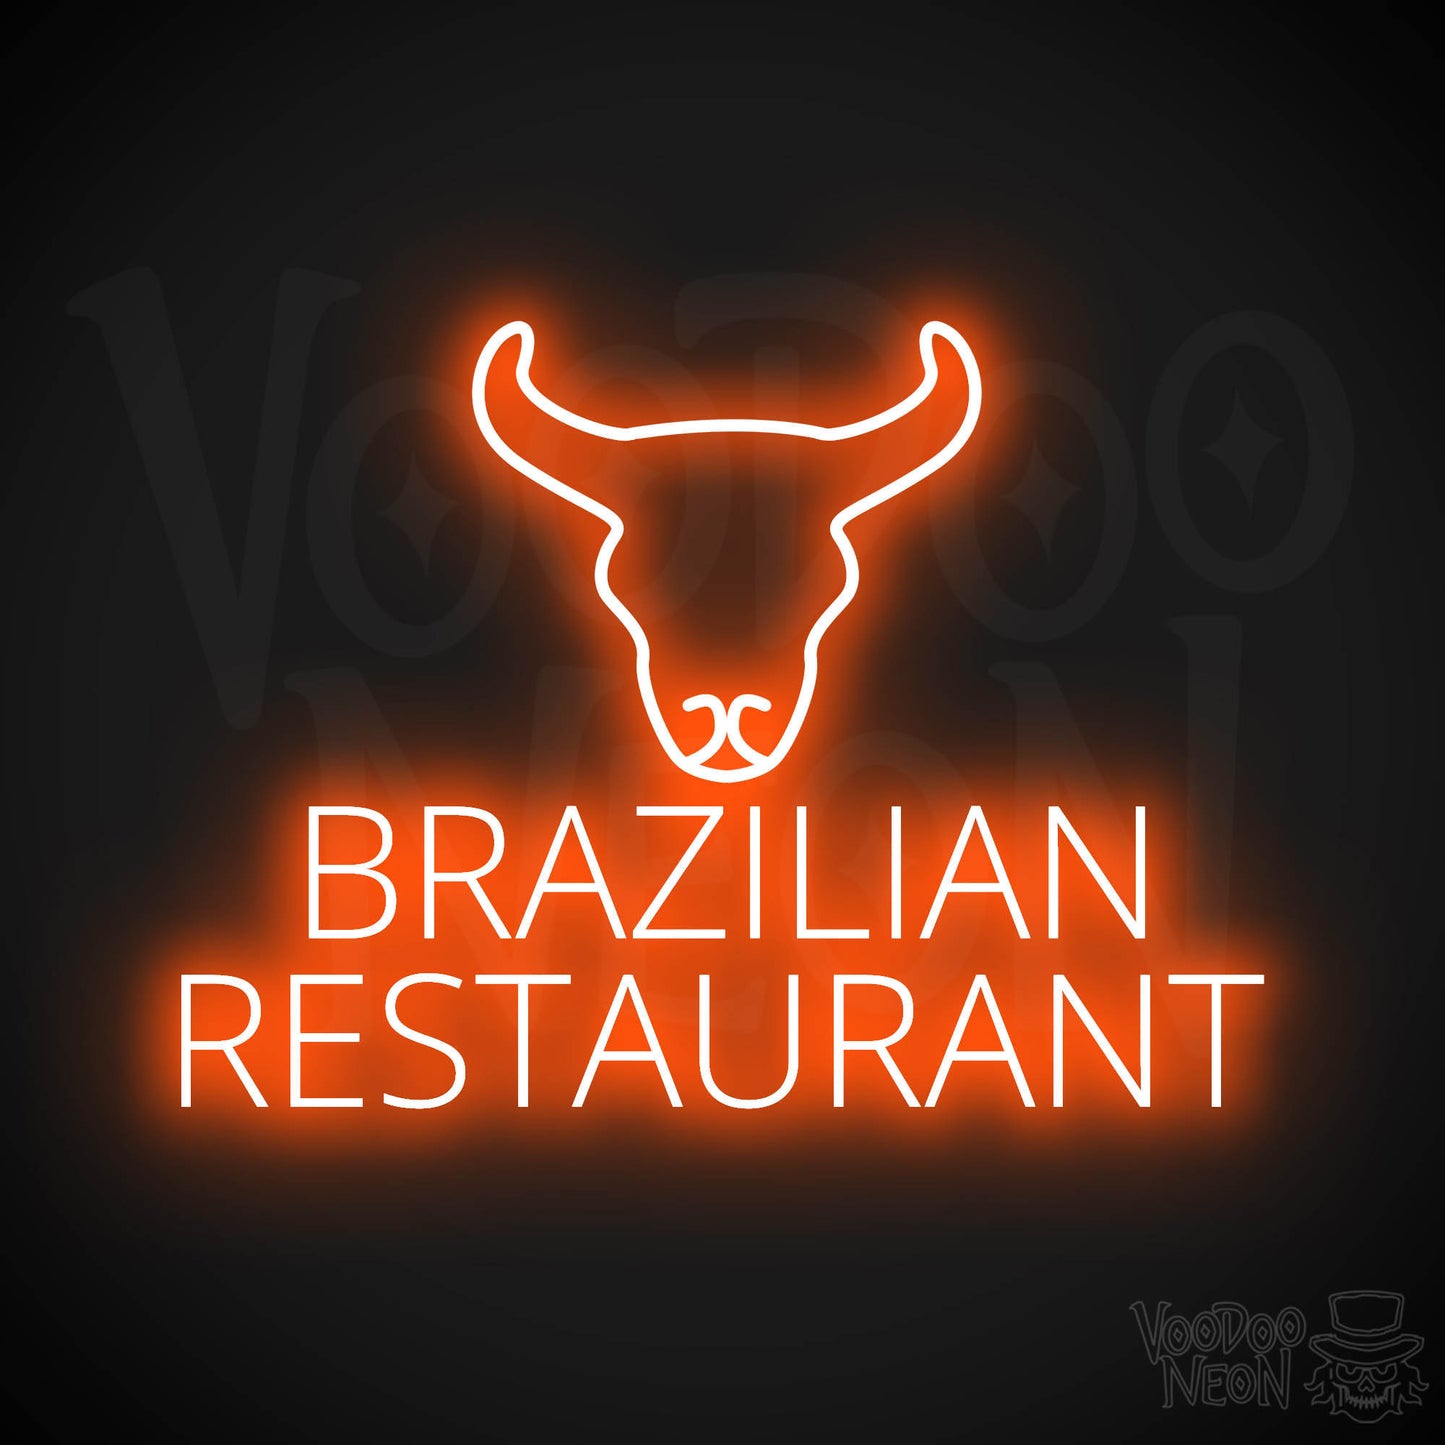 Brazilian Restaurant LED Neon - Orange